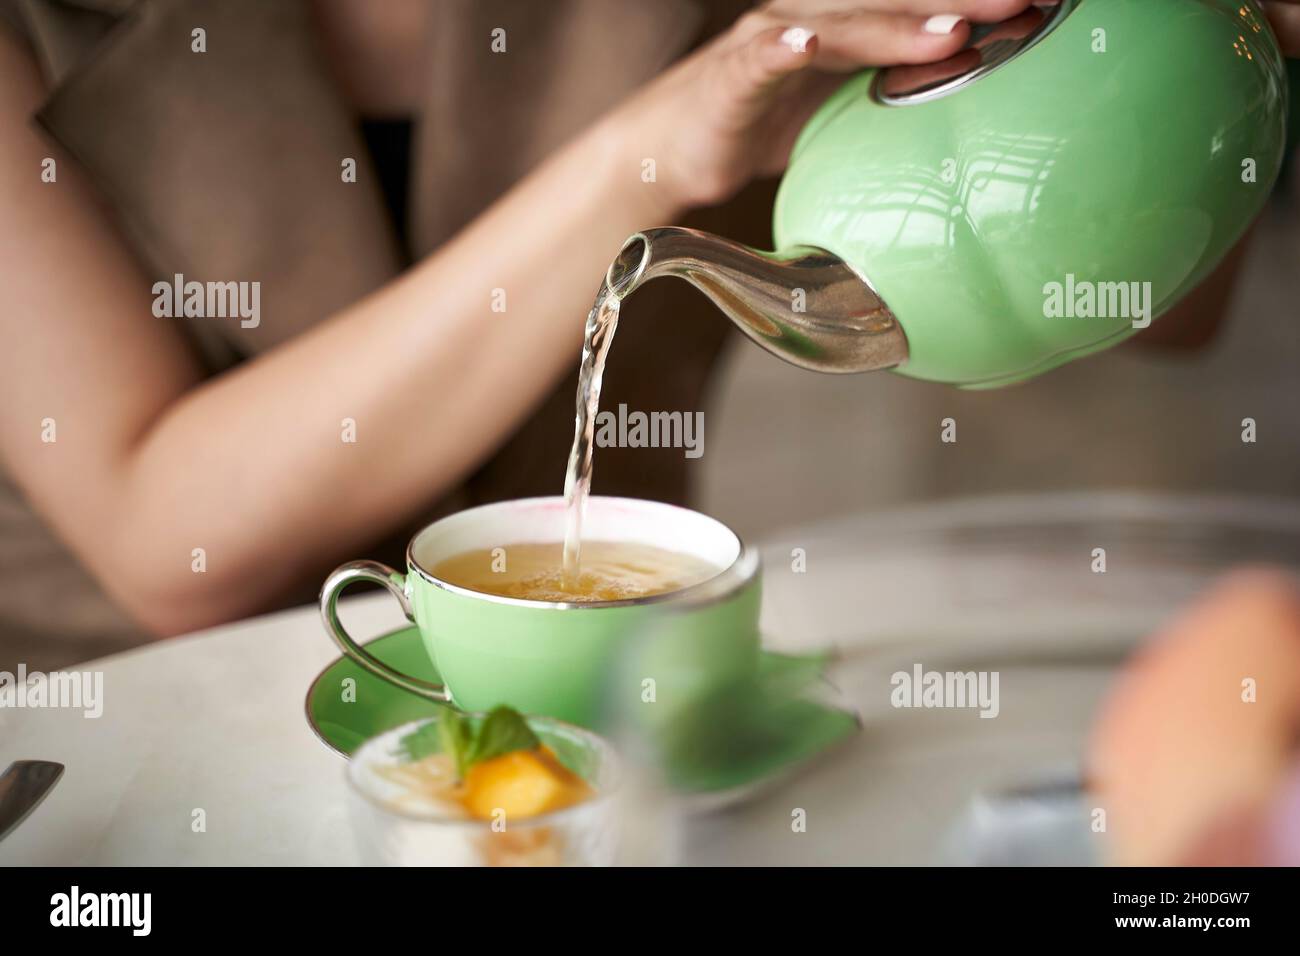 femme asiatique assise à une table et remplissant une tasse de thé Banque D'Images